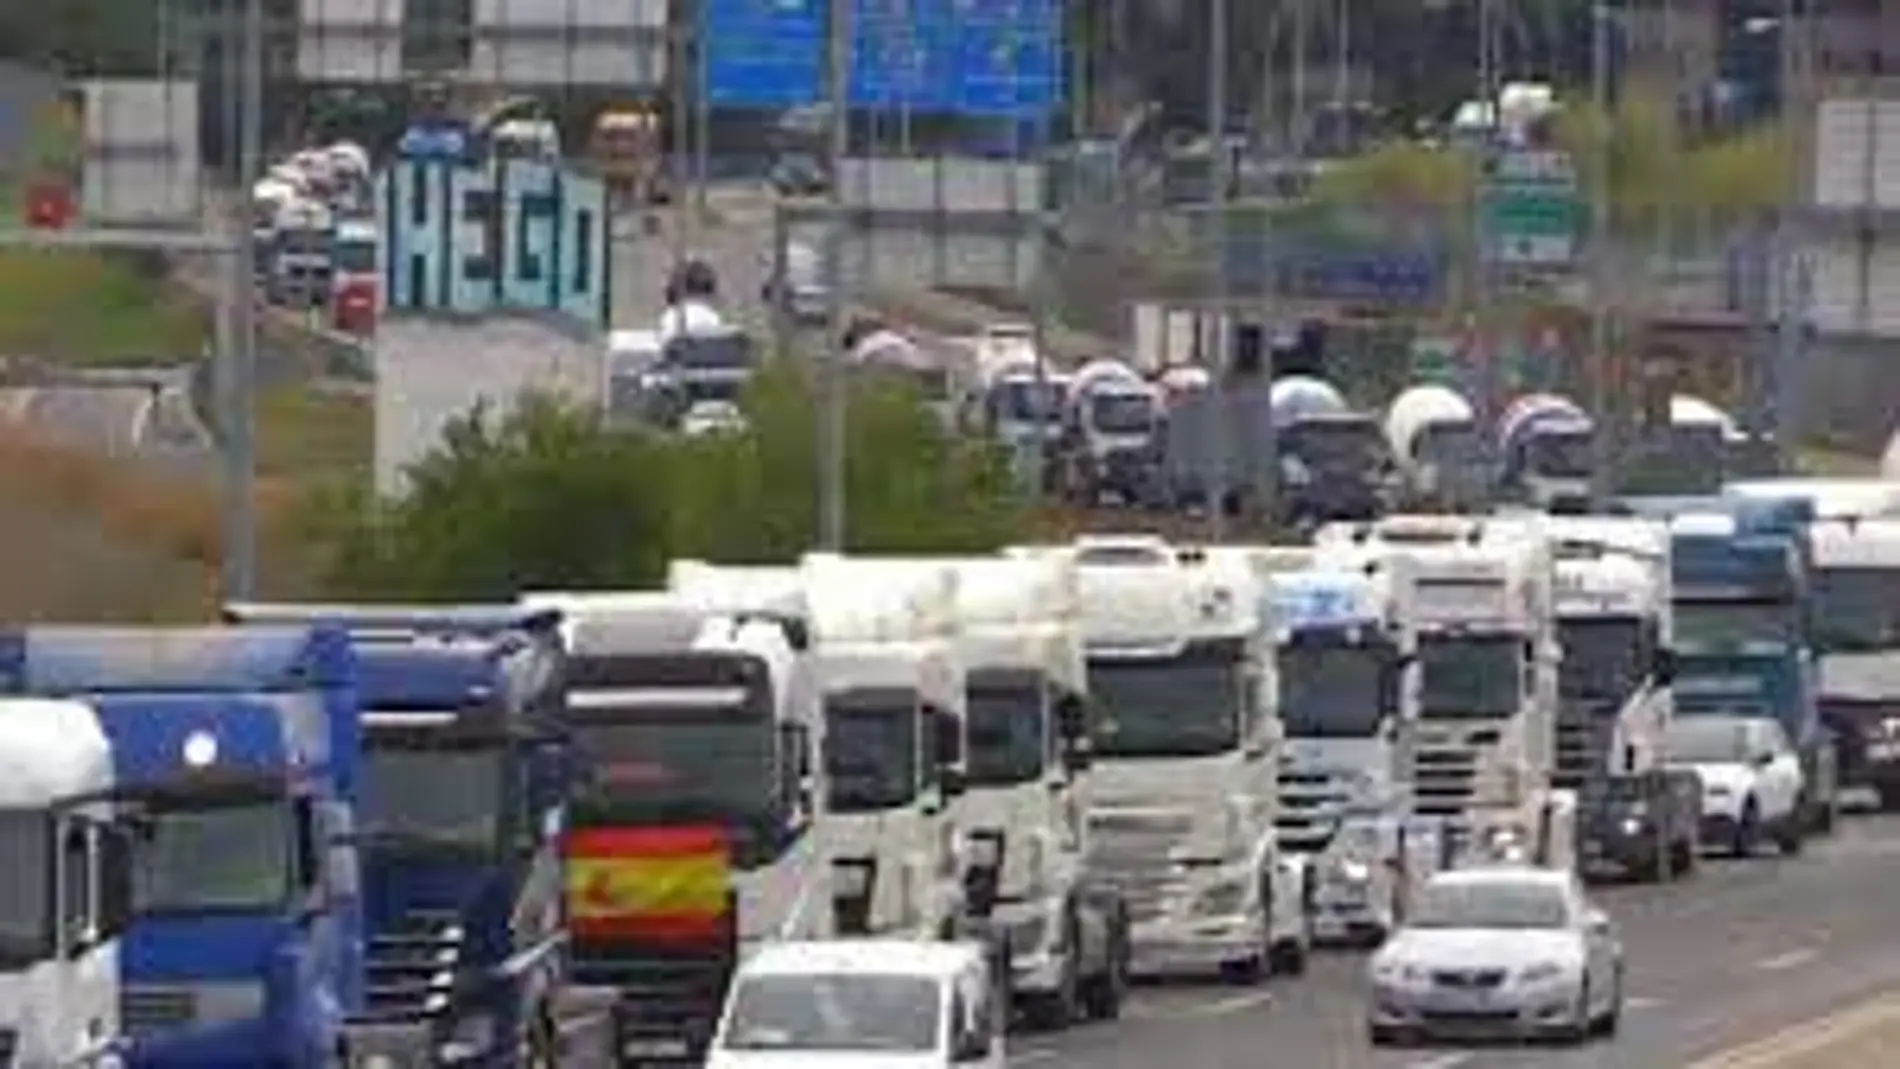 Marcha lenta de camiones camino de Madrid